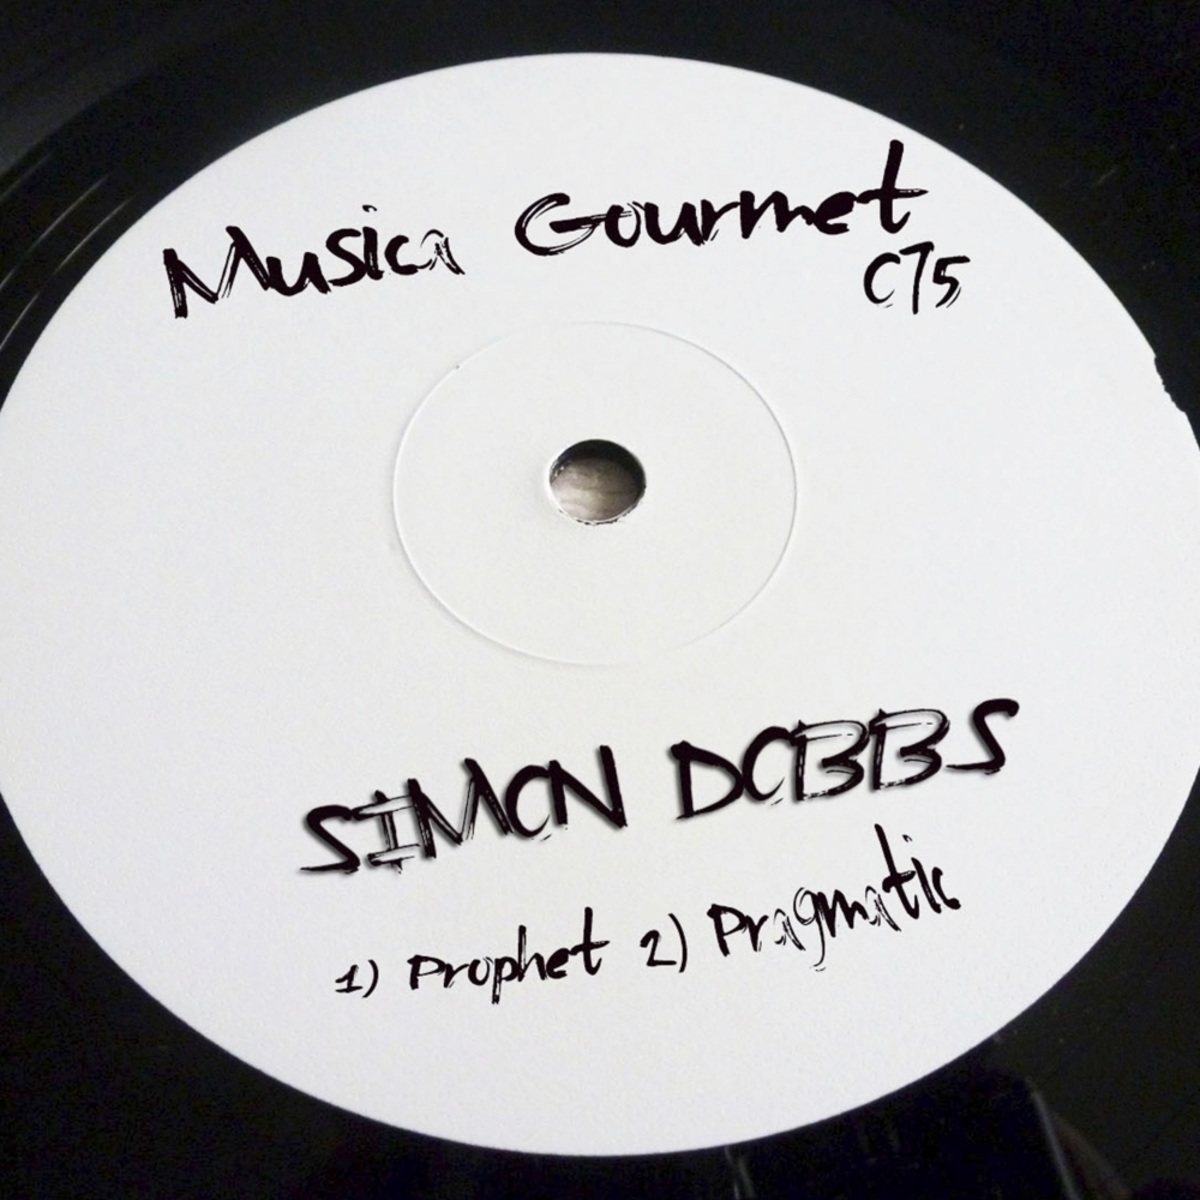 Simon Dobbs - Prophet / Musica Gourmet